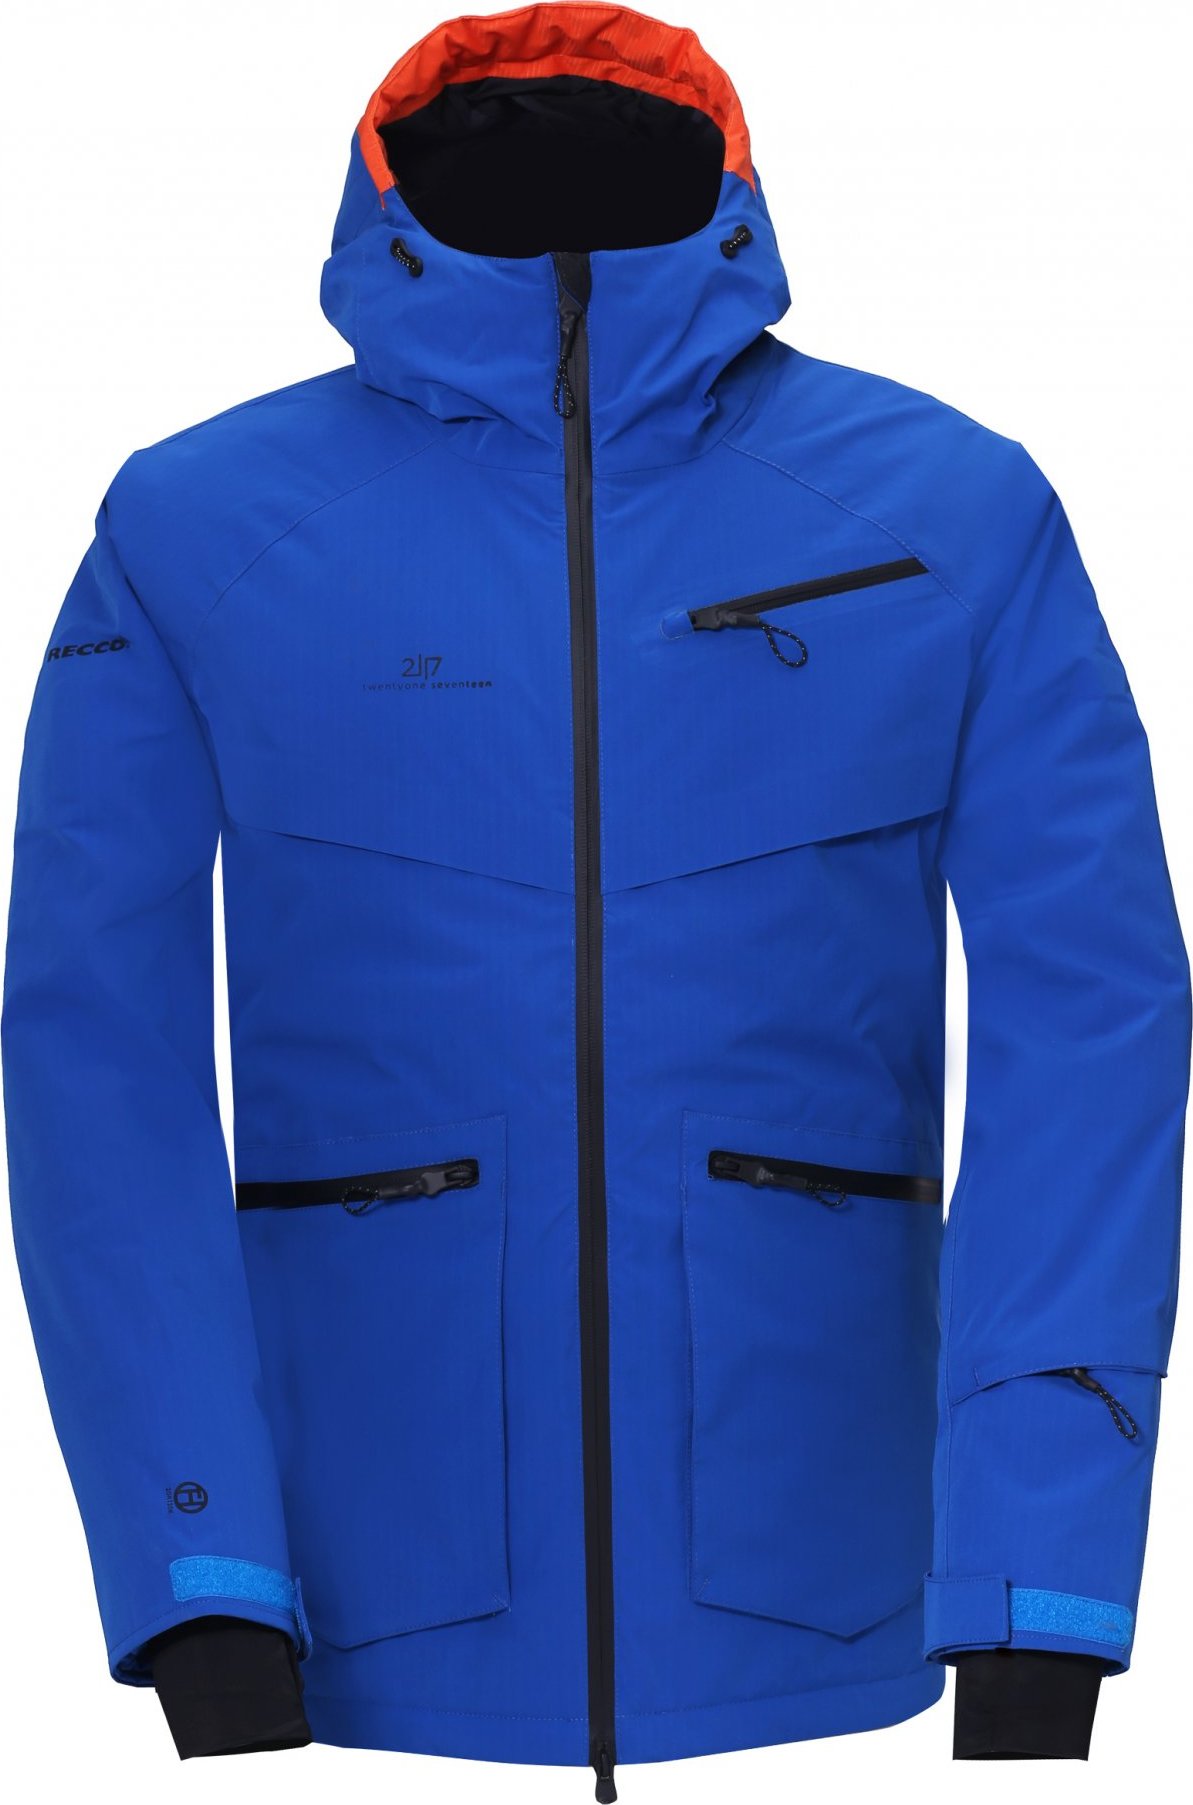 Pánská lyžařská bunda 2117 Nyhem Eco modrá Velikost: S